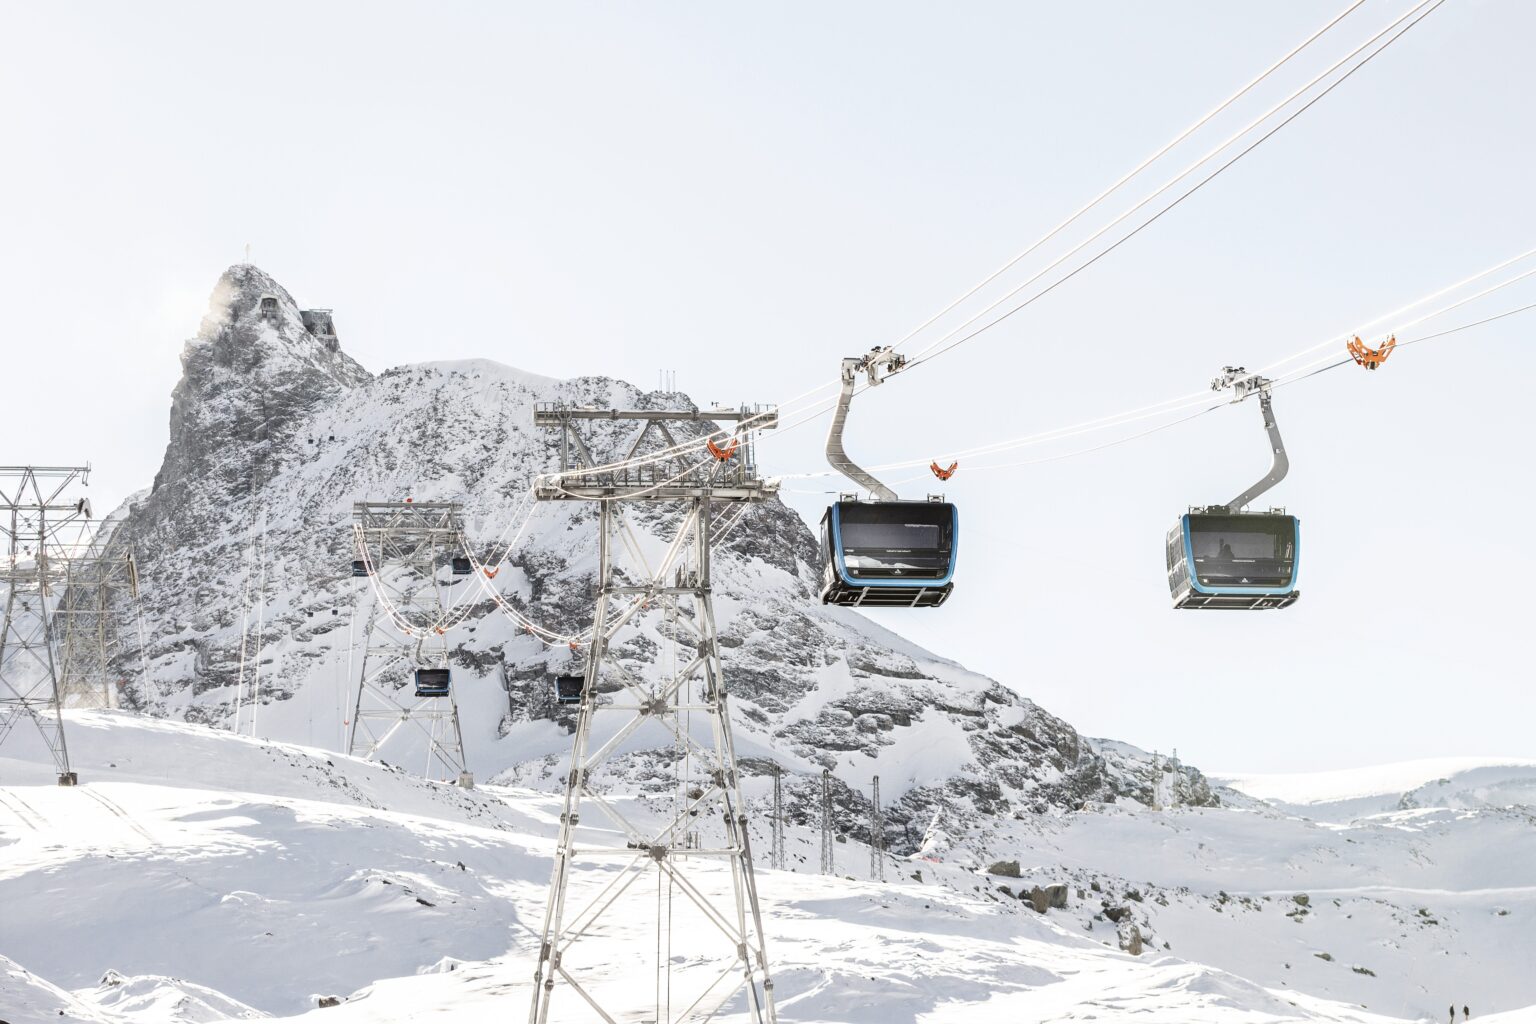 Matterhorn ski lift, Zermatt